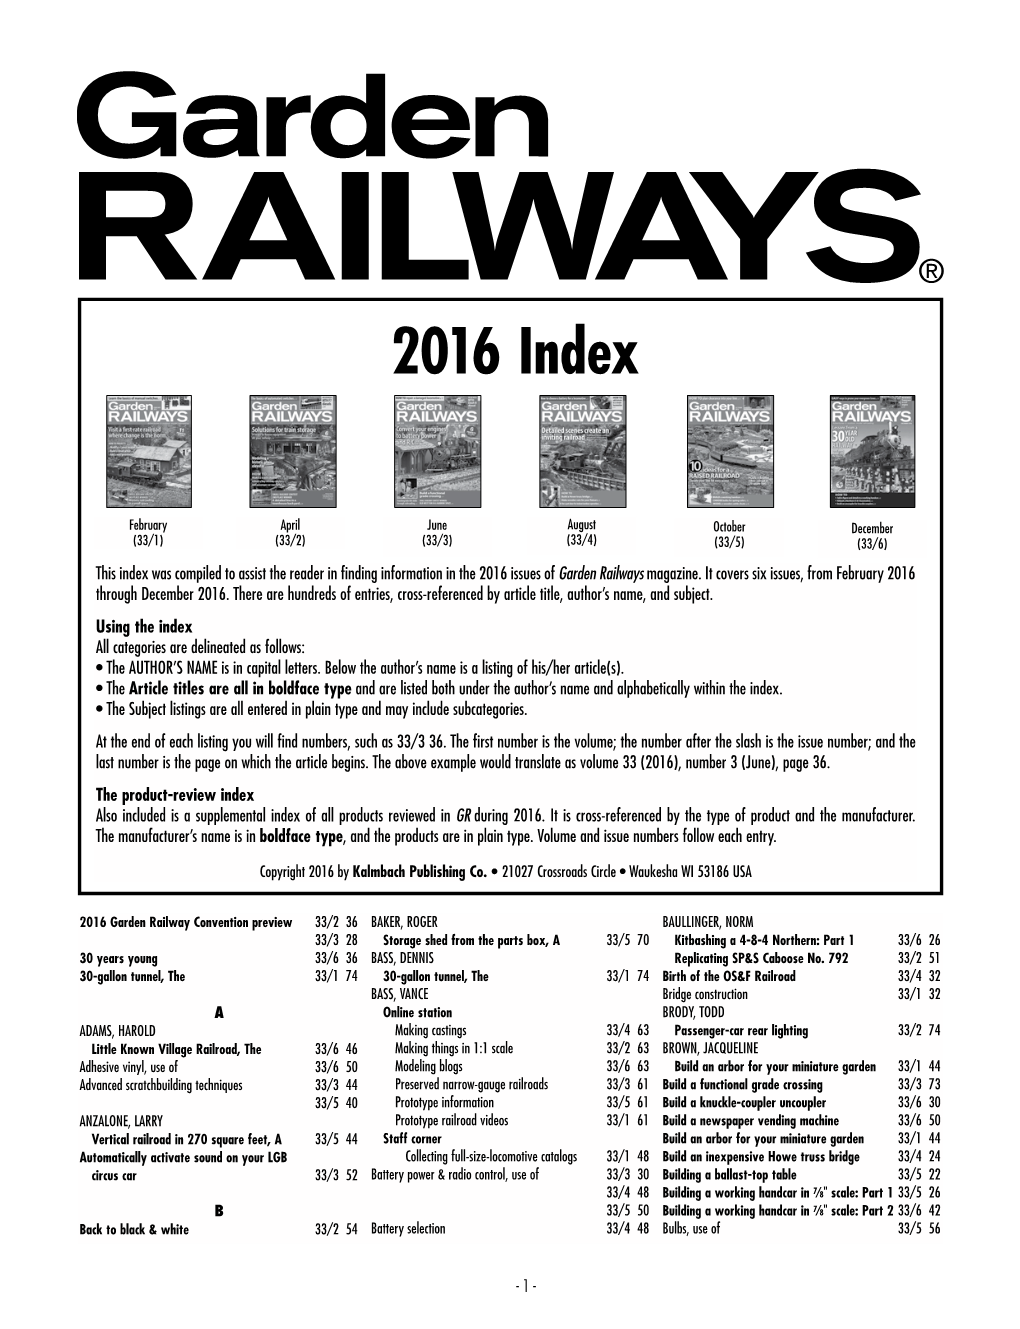 GRW Index 2016